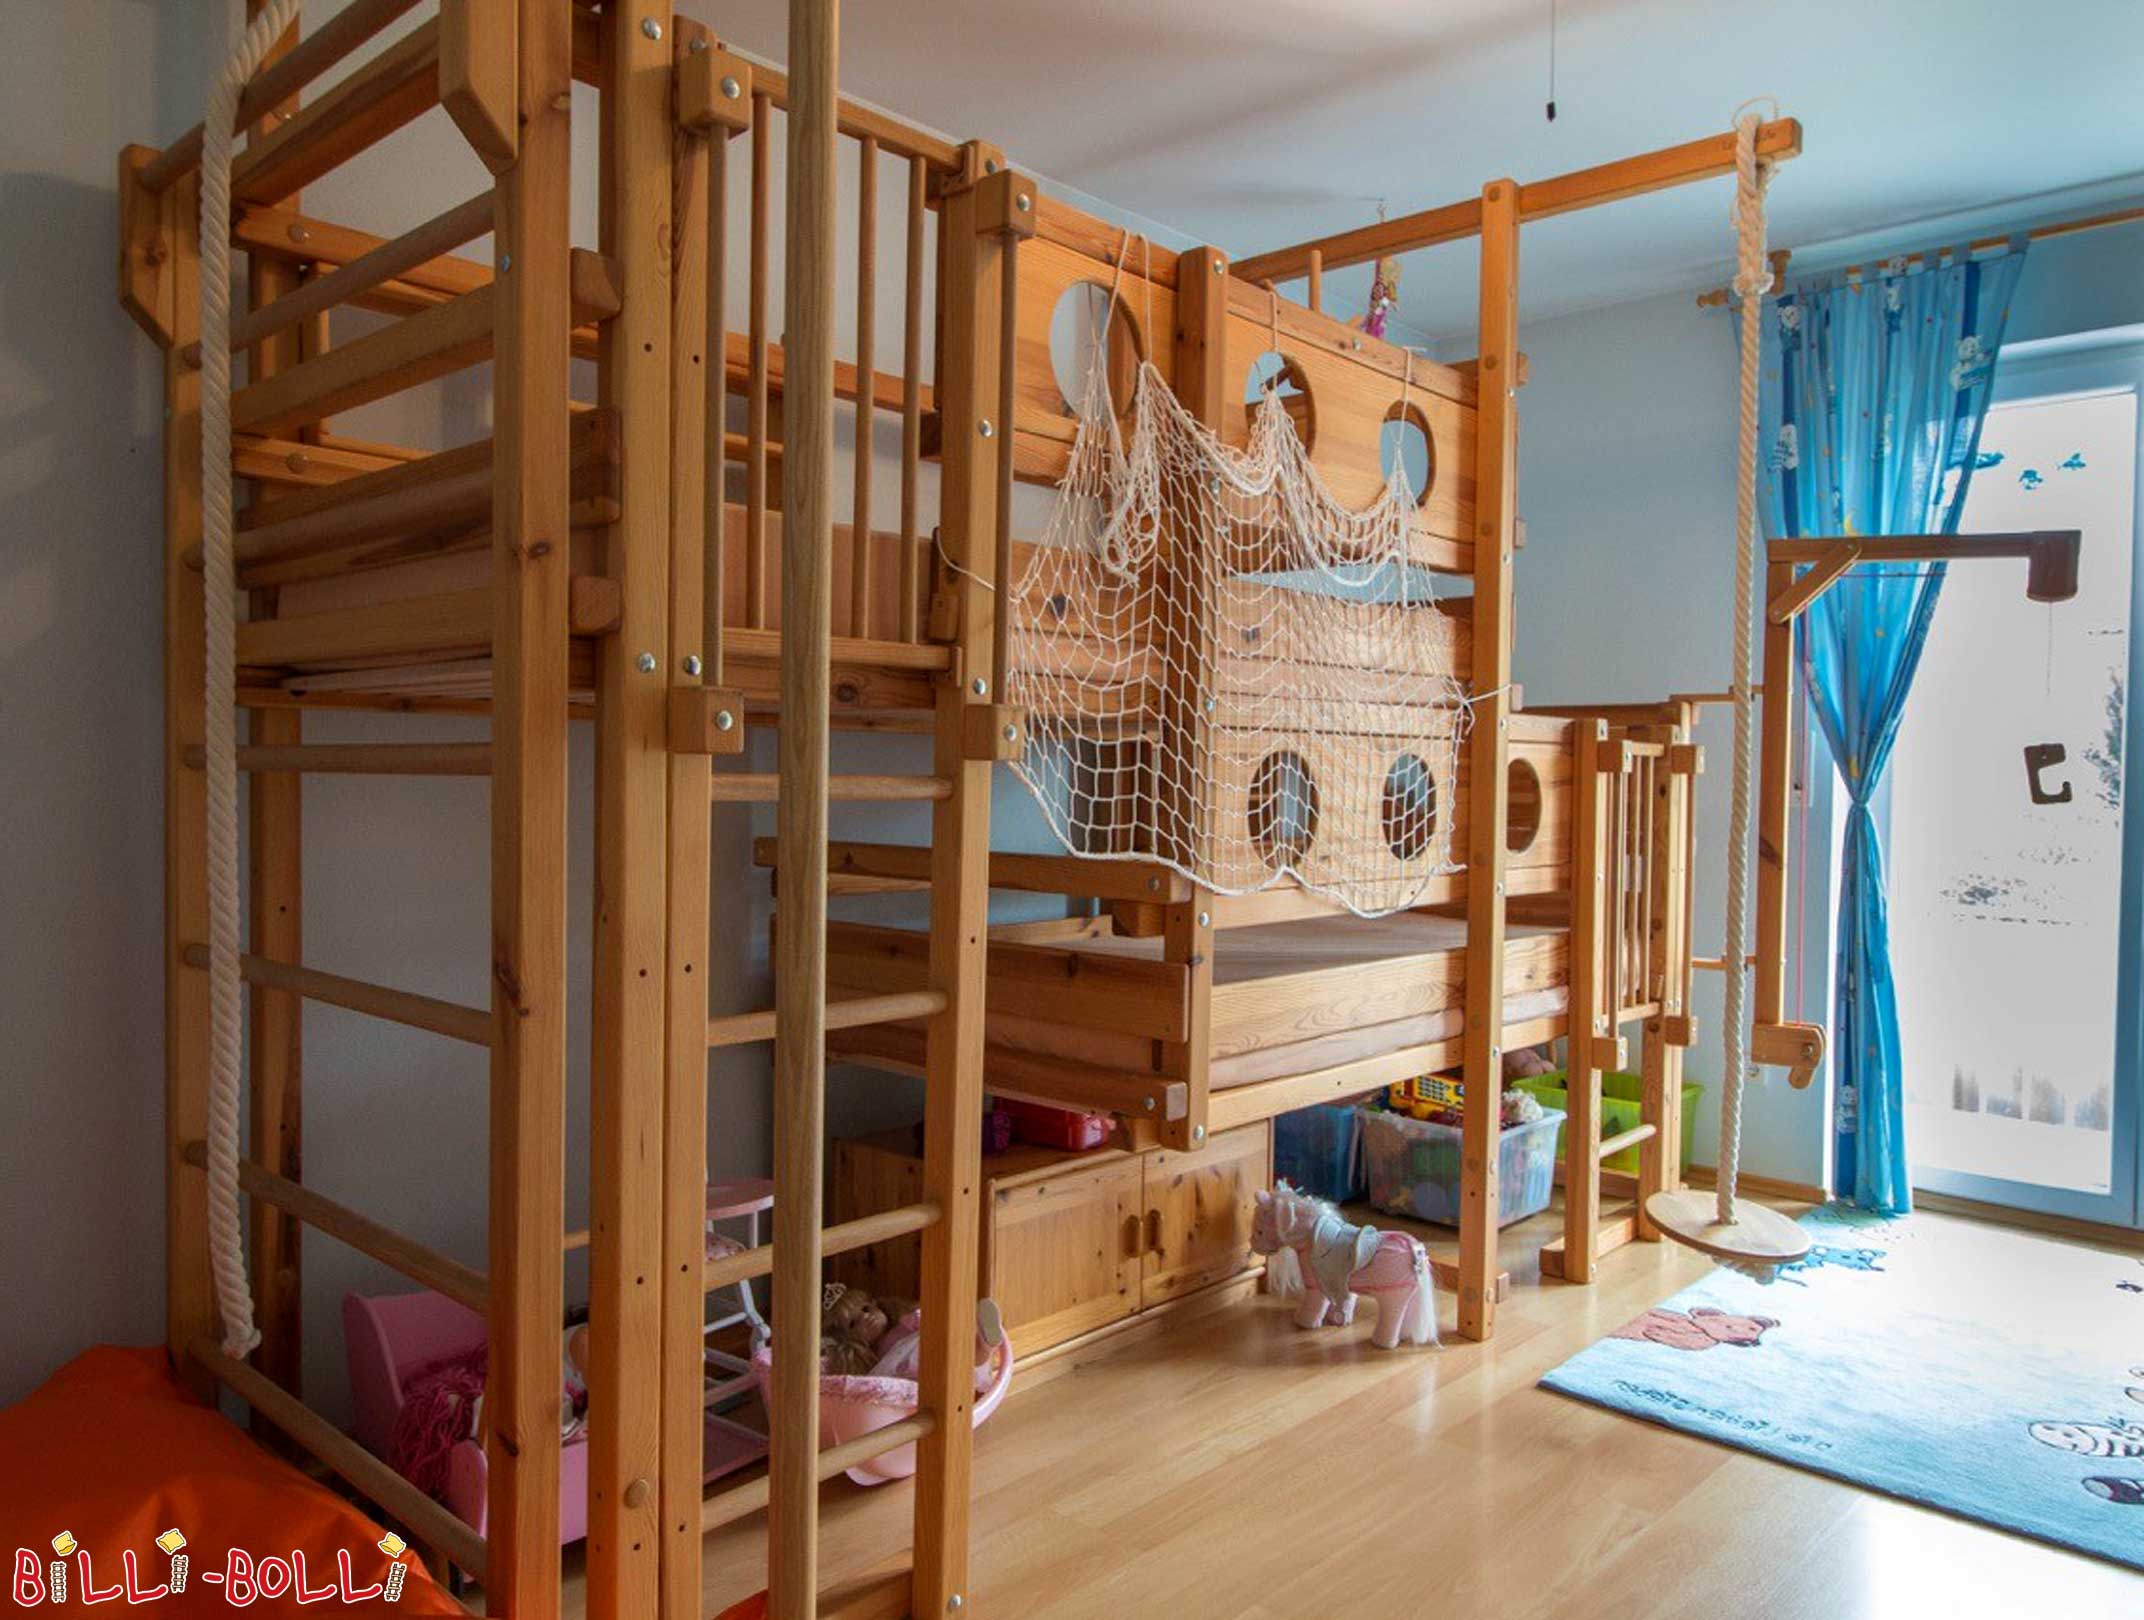 أسرة علوية مزدوجة مصنوعة من الخشب: السرير بطابقين هو سرير مزدوج بطابقين ل 2 أطفال (كلا سريري طابقين)